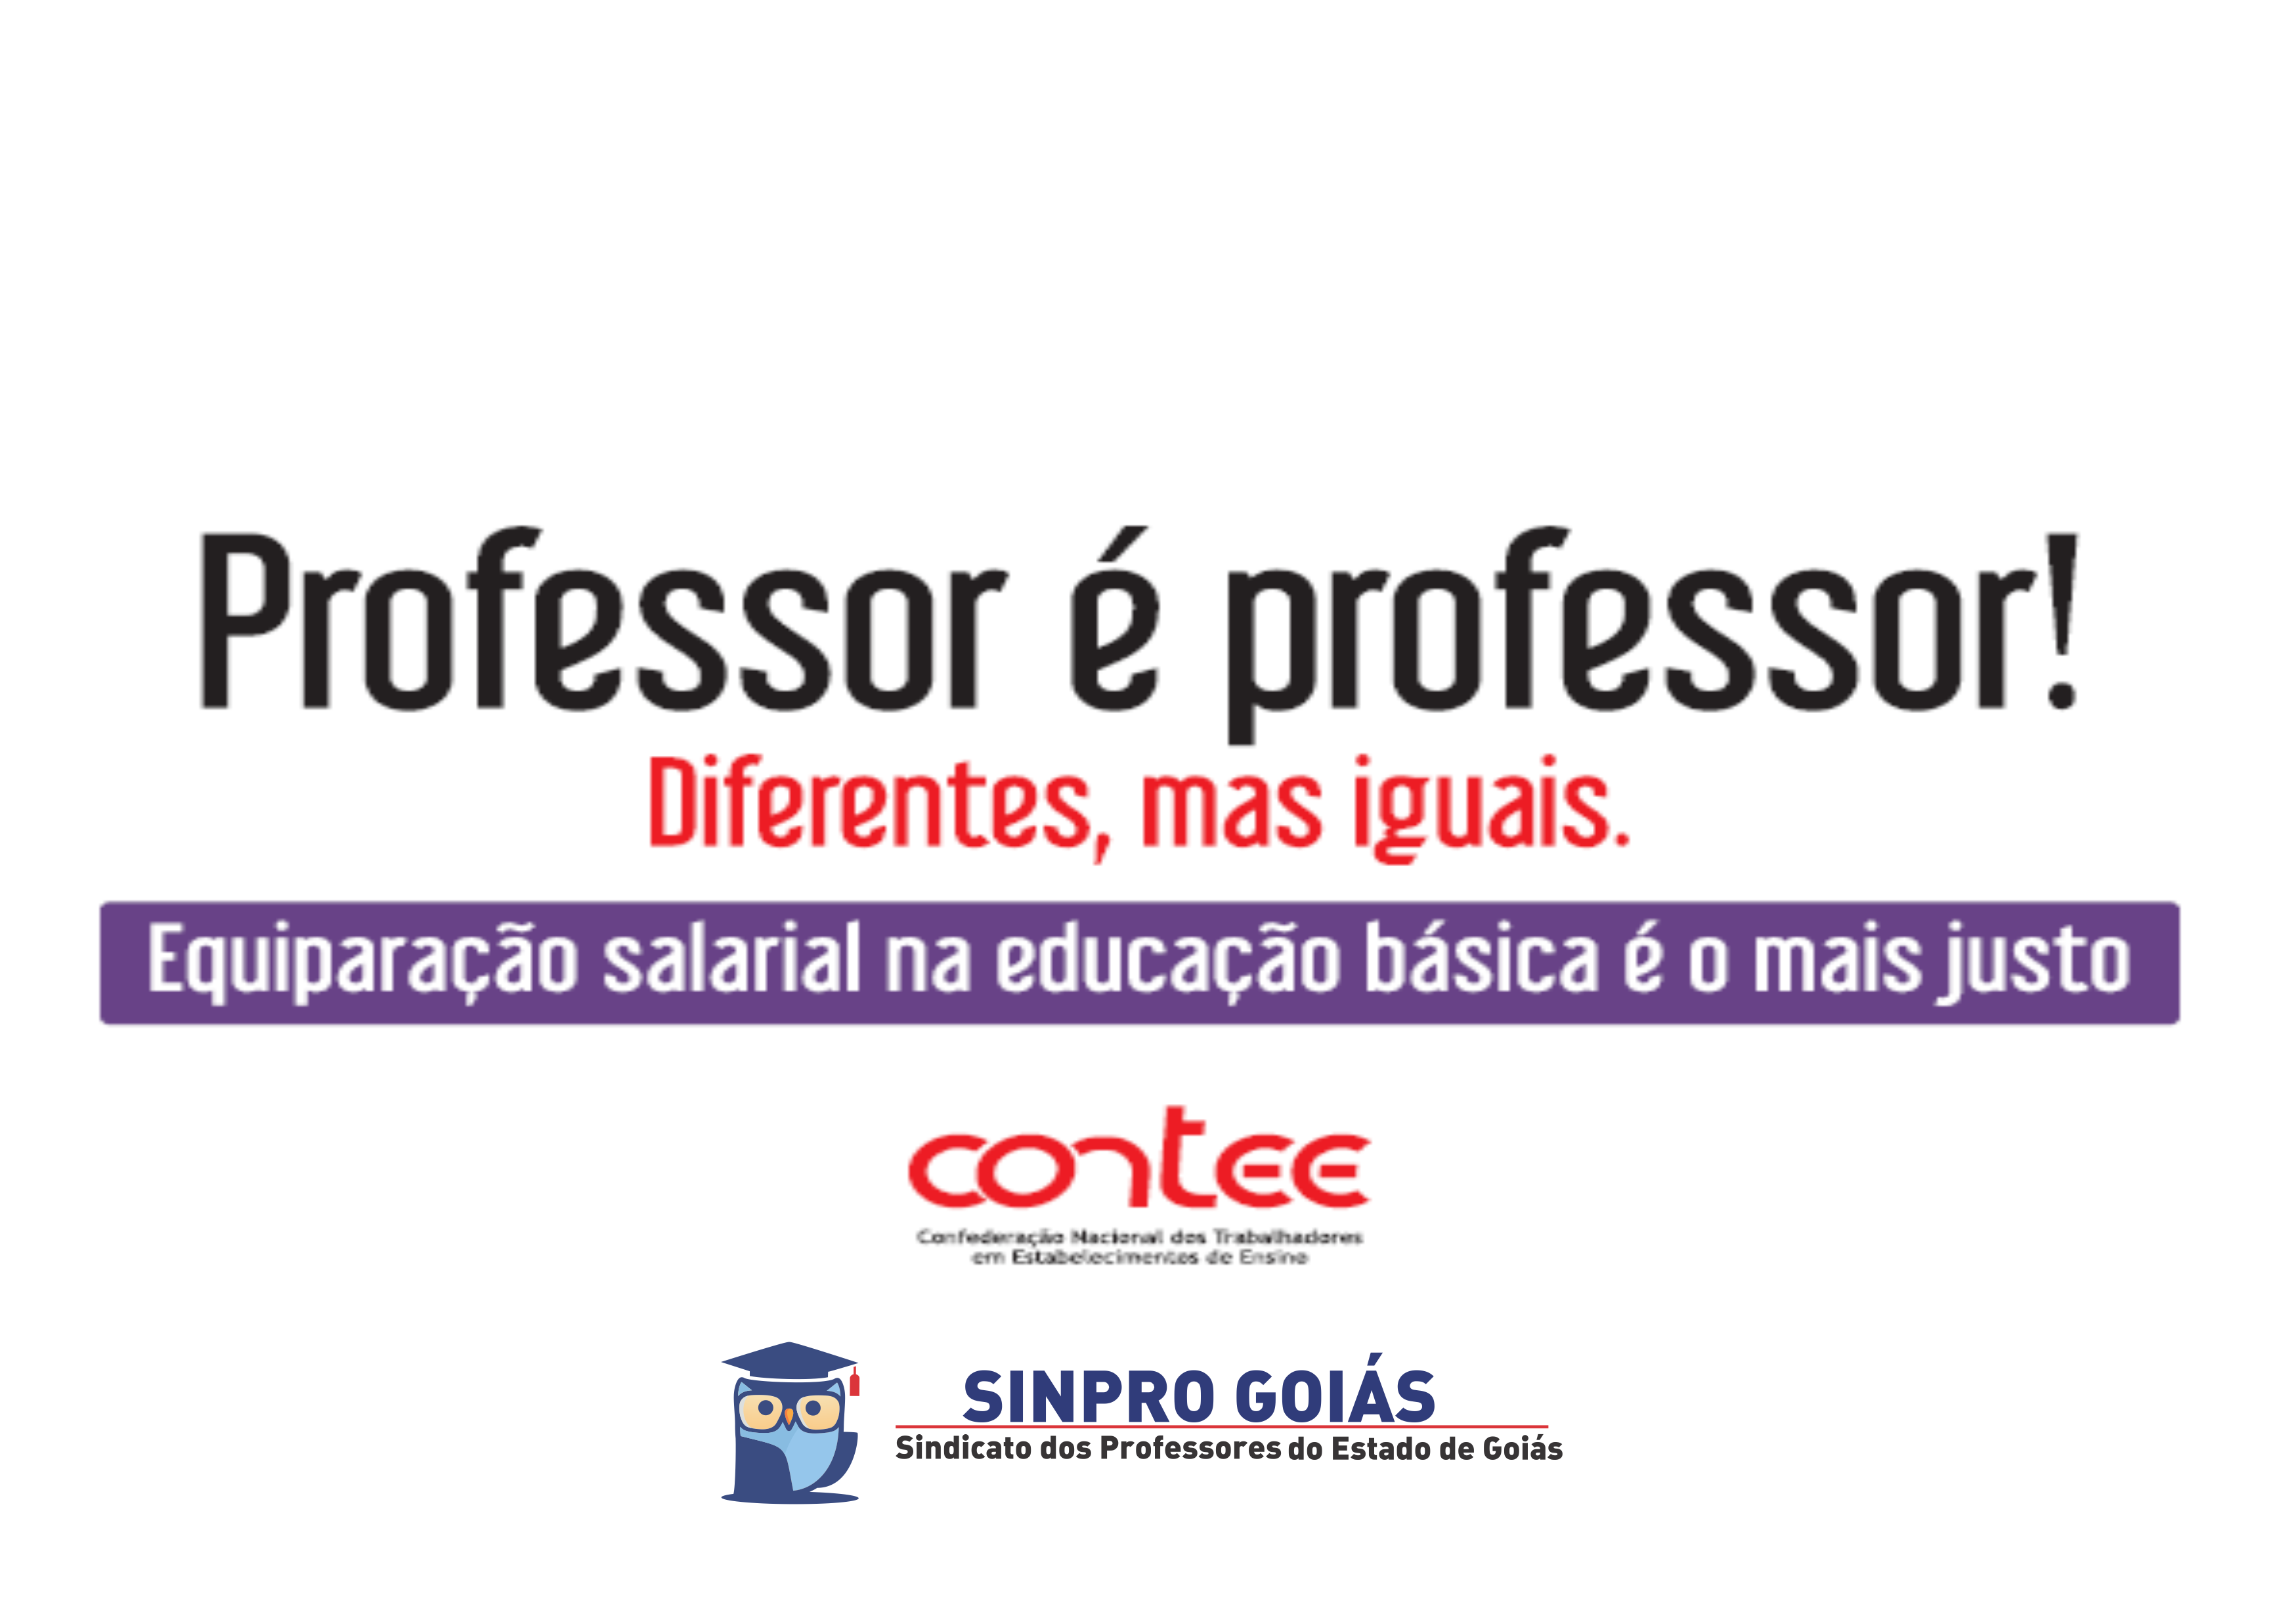 Contee lança campanha nacional pela equiparação salarial na educação básica